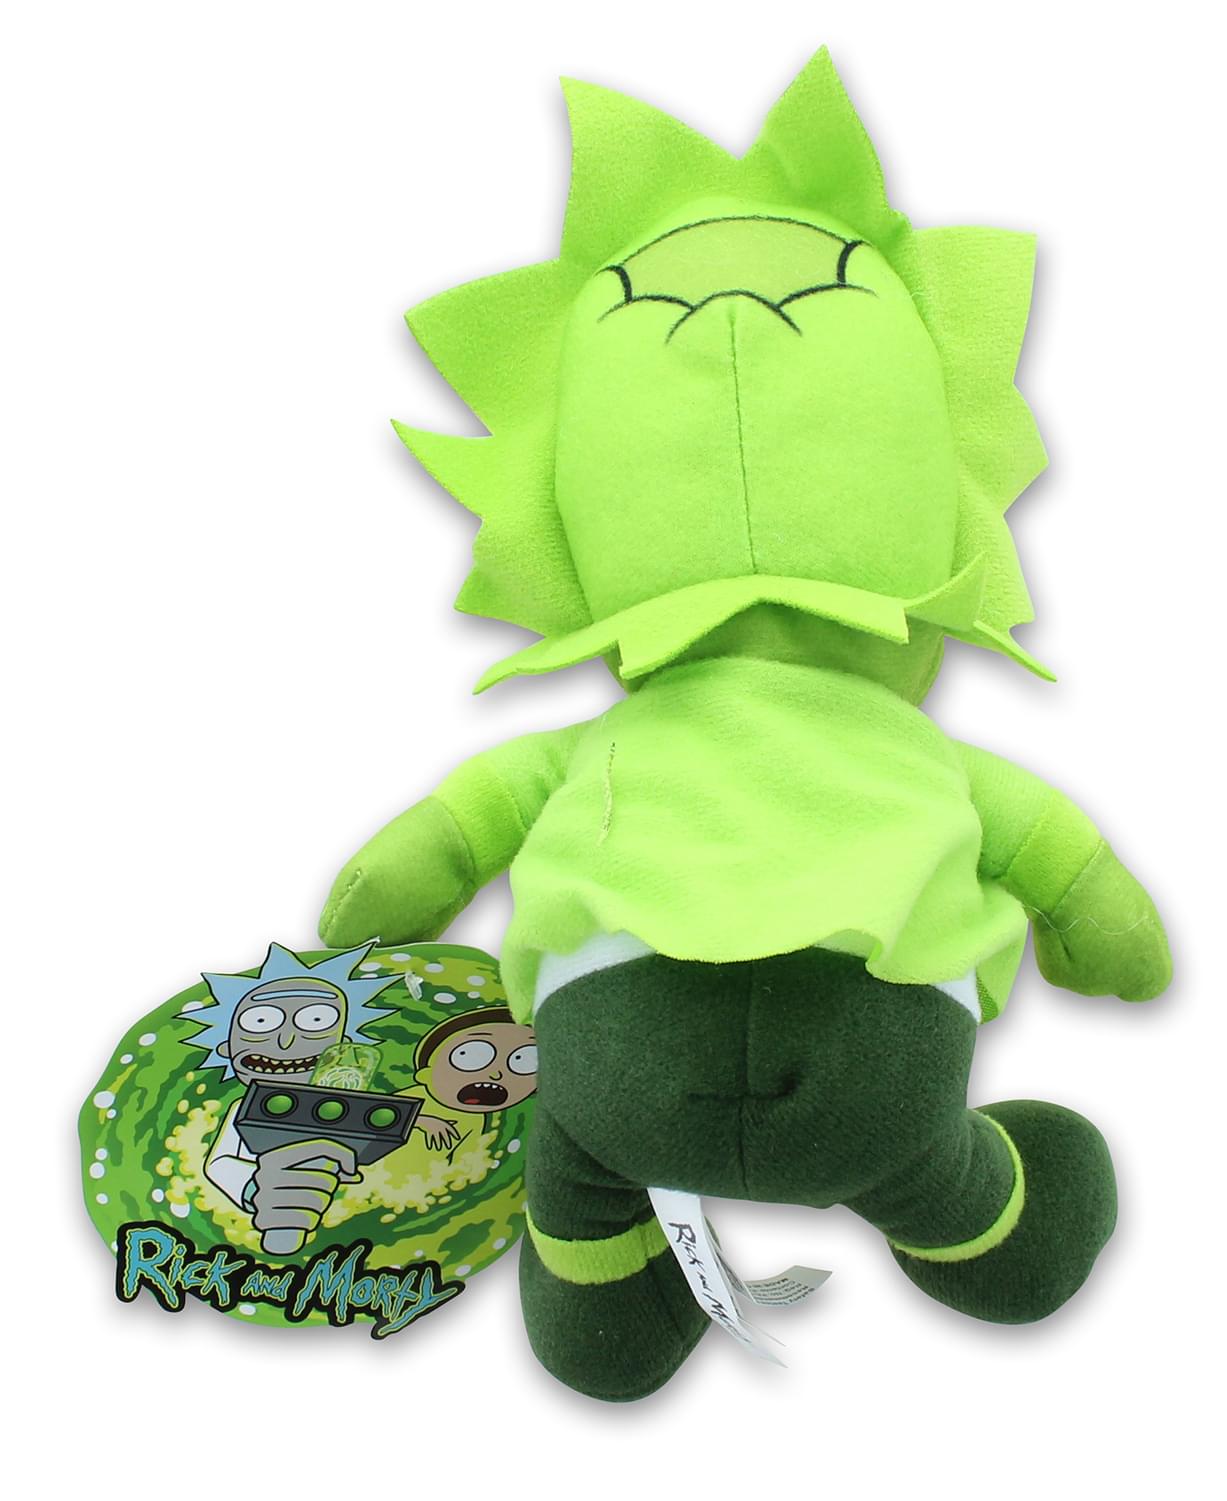 Rick & Morty 8 Inch Stuffed Character Plush | Toxic Rick